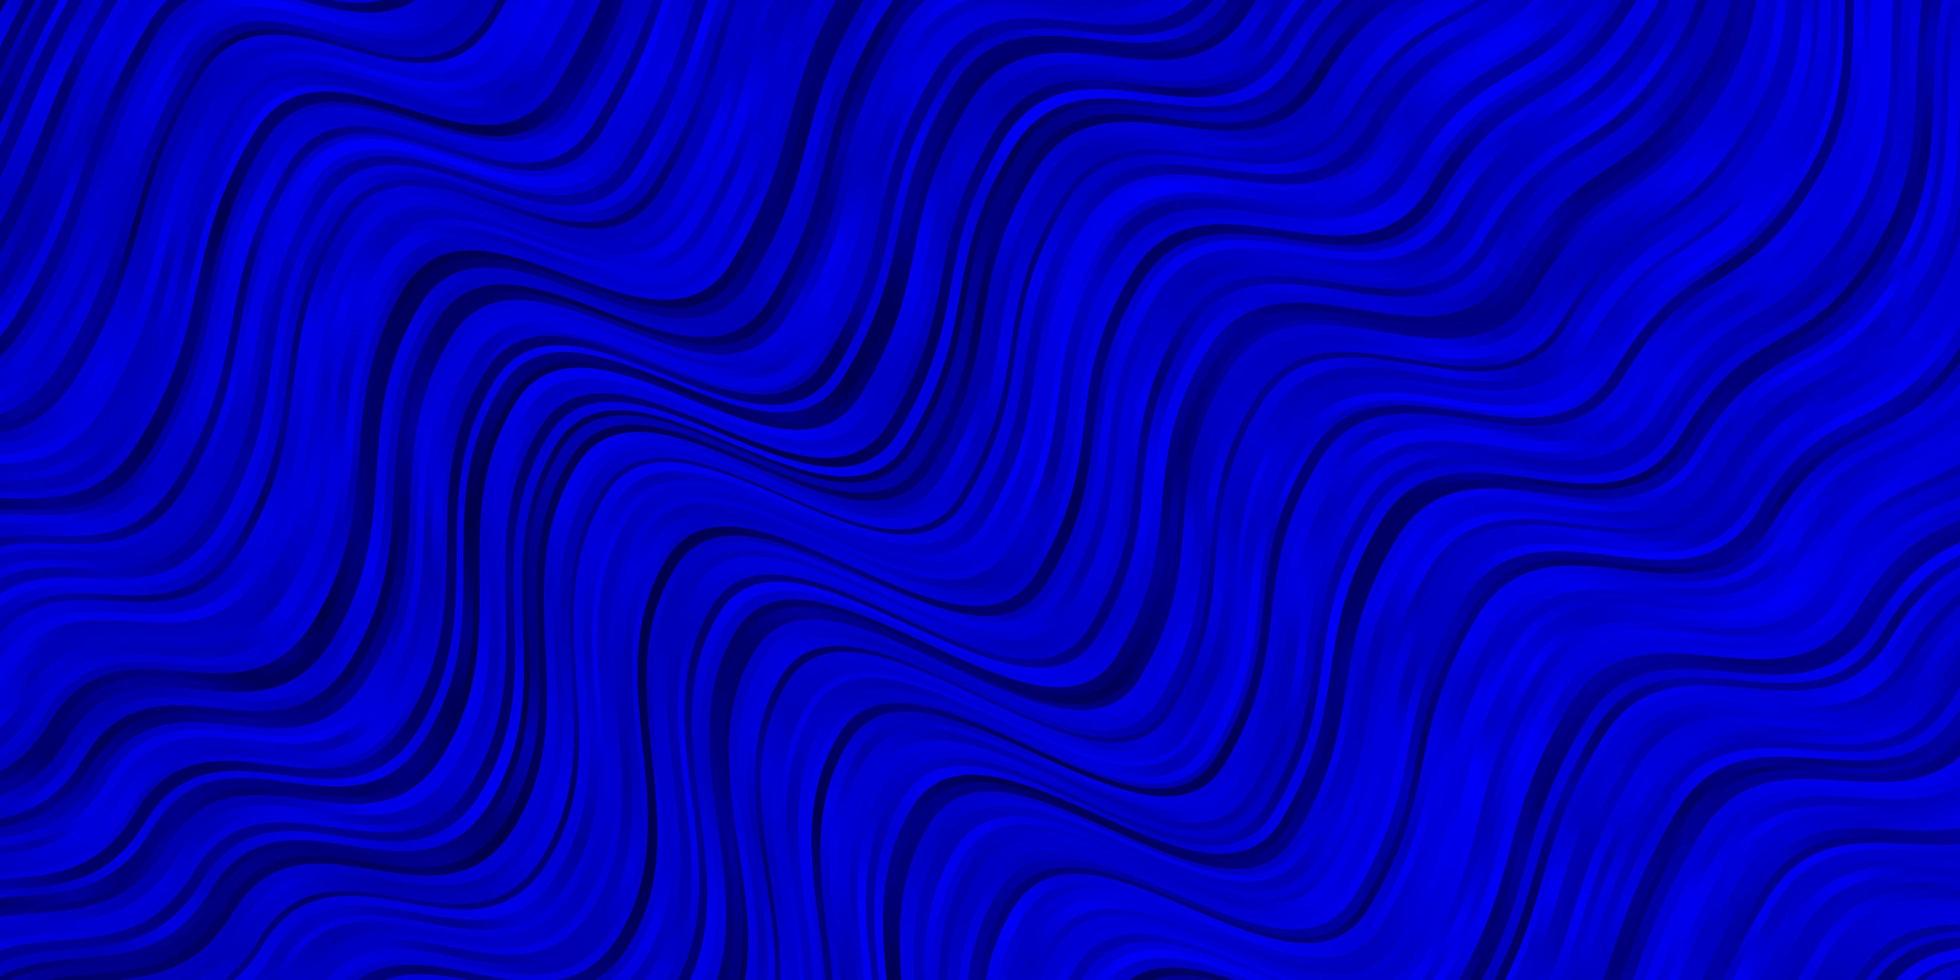 layout de vetor de azul claro com curvas.